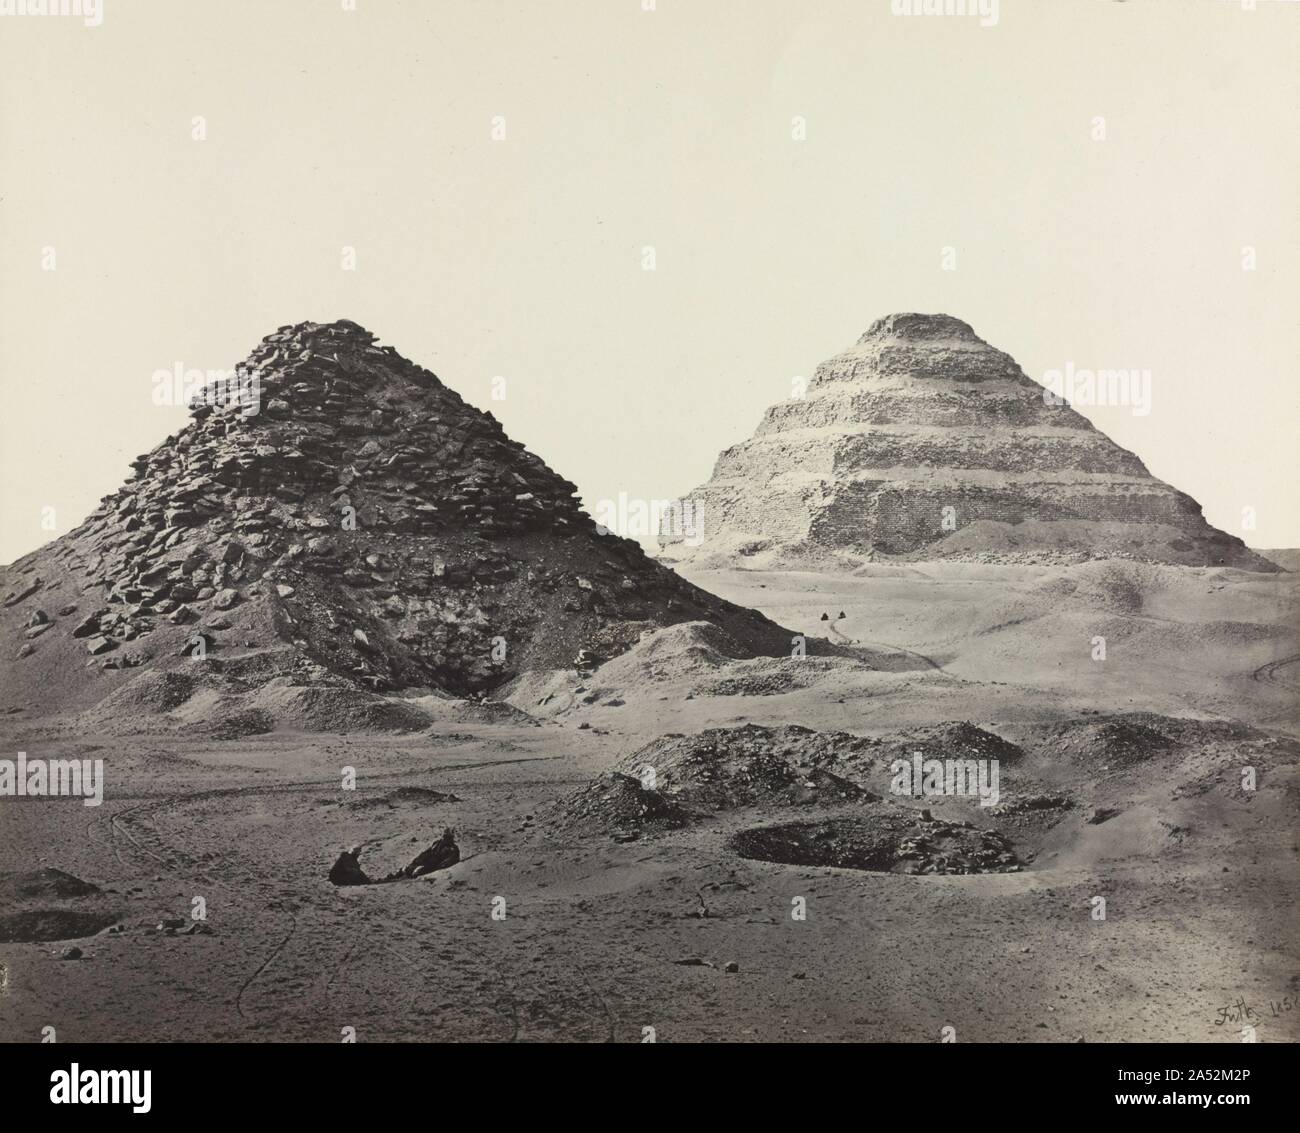 Le Piramidi di Saqqara, da nord-est, 1858. Frith è stato il primo fotografo in Egitto per utilizzare con successo il collodio umido processo, introdotto nel 1851. La sua piastra di vetro negativi hanno dato più nitidi e immagini più dettagliate rispetto a quelle della carta. Egli ha anche creato la piastra di mammoth stampe, come questa dimensione è chiamato, che richiedeva ugualmente grande lastra di vetro negativi. Perseguendo il processo&#x2019;s esigente chimica in Egitto&#x2019;s sole cocente stava cercando. Frith talvolta cercato rifugio nelle tombe per l'aria fredda e tenebre per elaborare i suoi piatti. "Io stesso spinta indietro sulle mie mani e ginocchia, Foto Stock